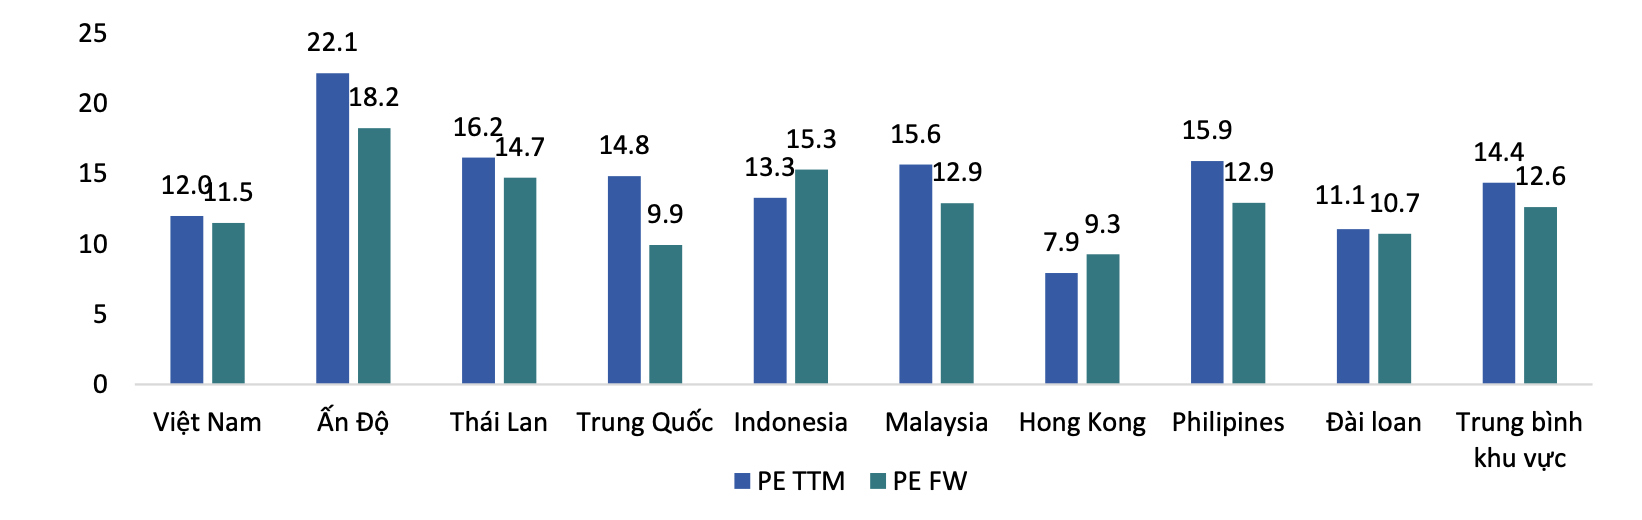 So sánh với khu vực, định giá thị trường Việt Nam hiện tại vẫn đang thấp hơn mức dự phóng trung bình khu vực năm 2023 là 12,4 lần. Ảnh: BSC